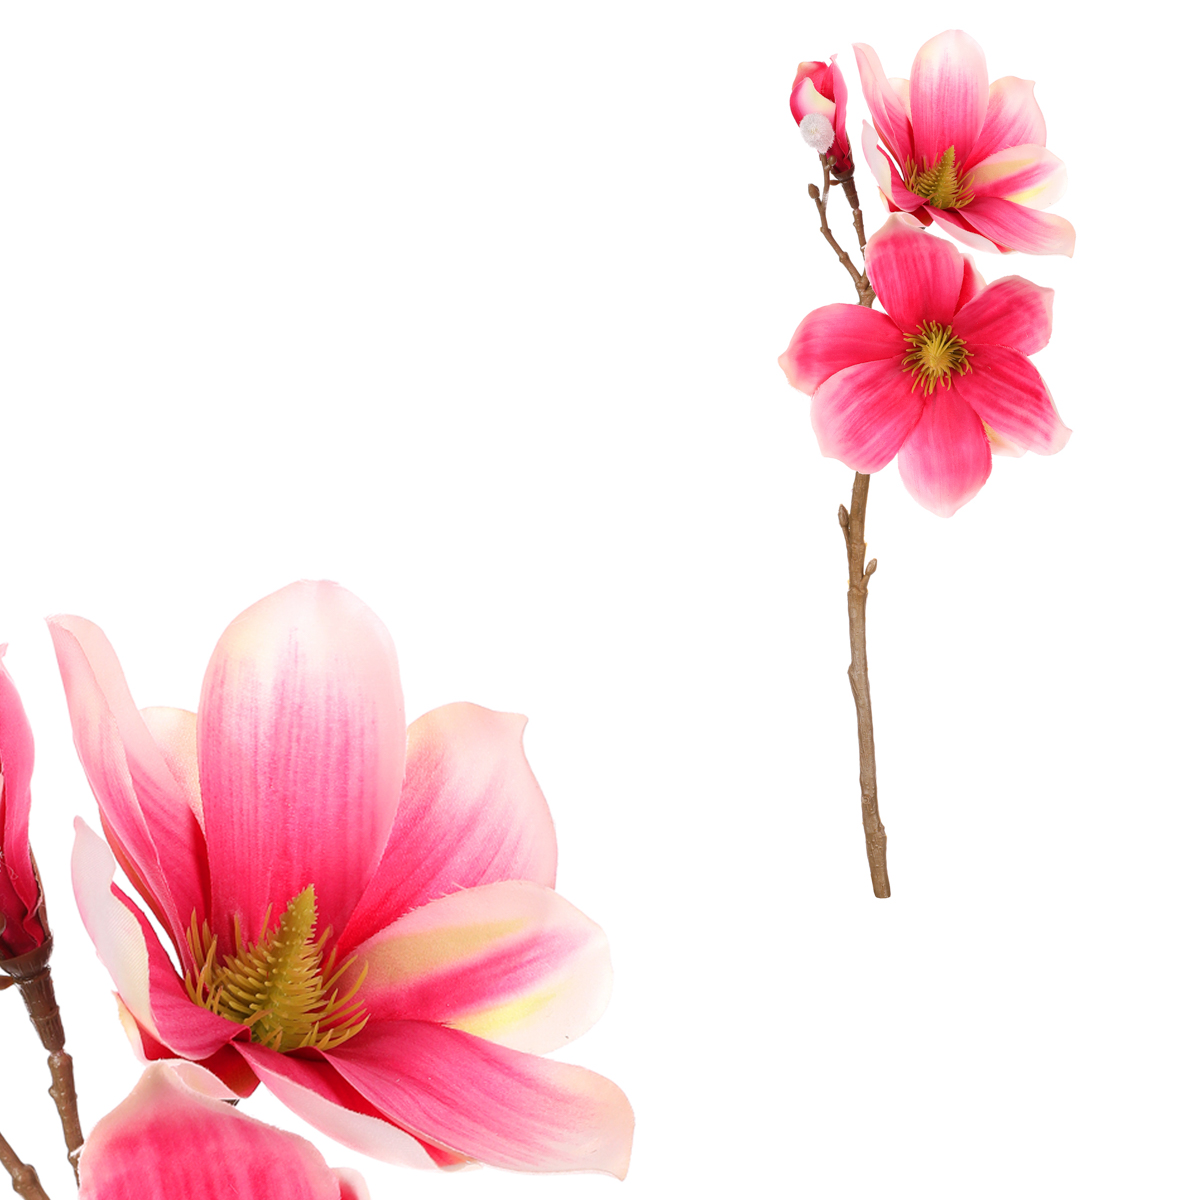 Magnolie - umělá květina, barva růžová.